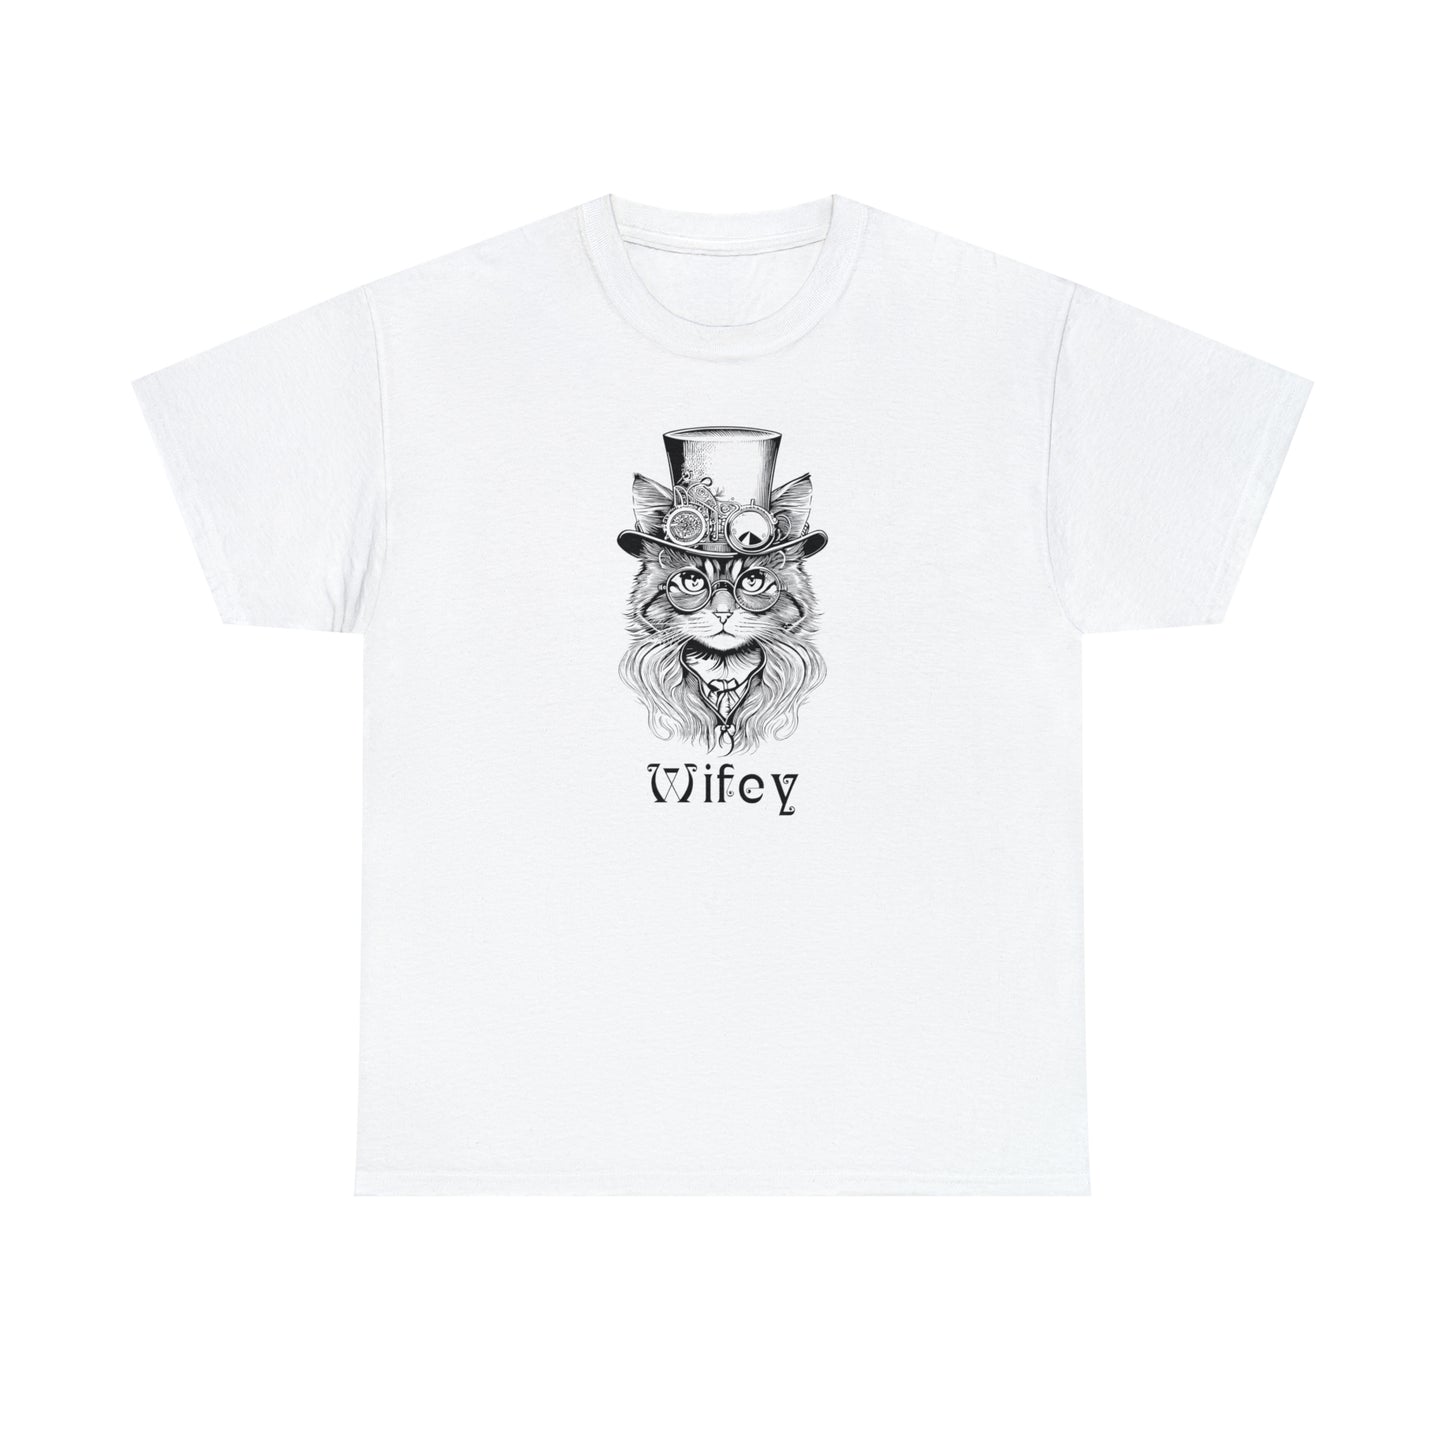 Wifey T-Shirt For Steampunk Wedding TShirt For Bride T Shirt For Couples Shirt For New Wife Shirt